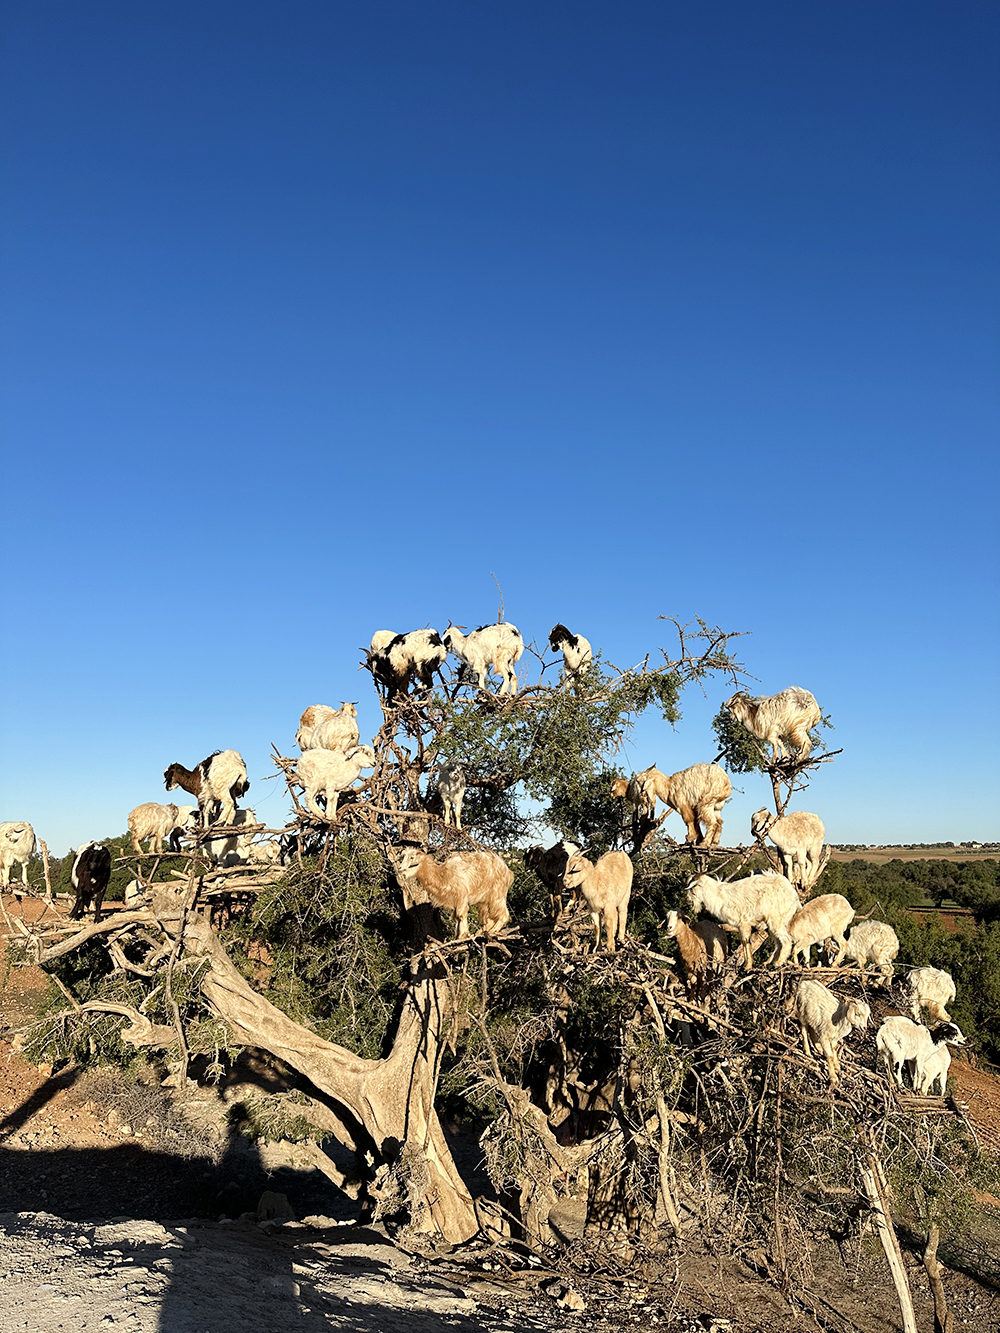 Степи Марокко известны своими козами, пасущимися прямо на деревьях. Стоило нам остановиться для фото — сразу подбежали какие⁠-⁠то парни просить денег